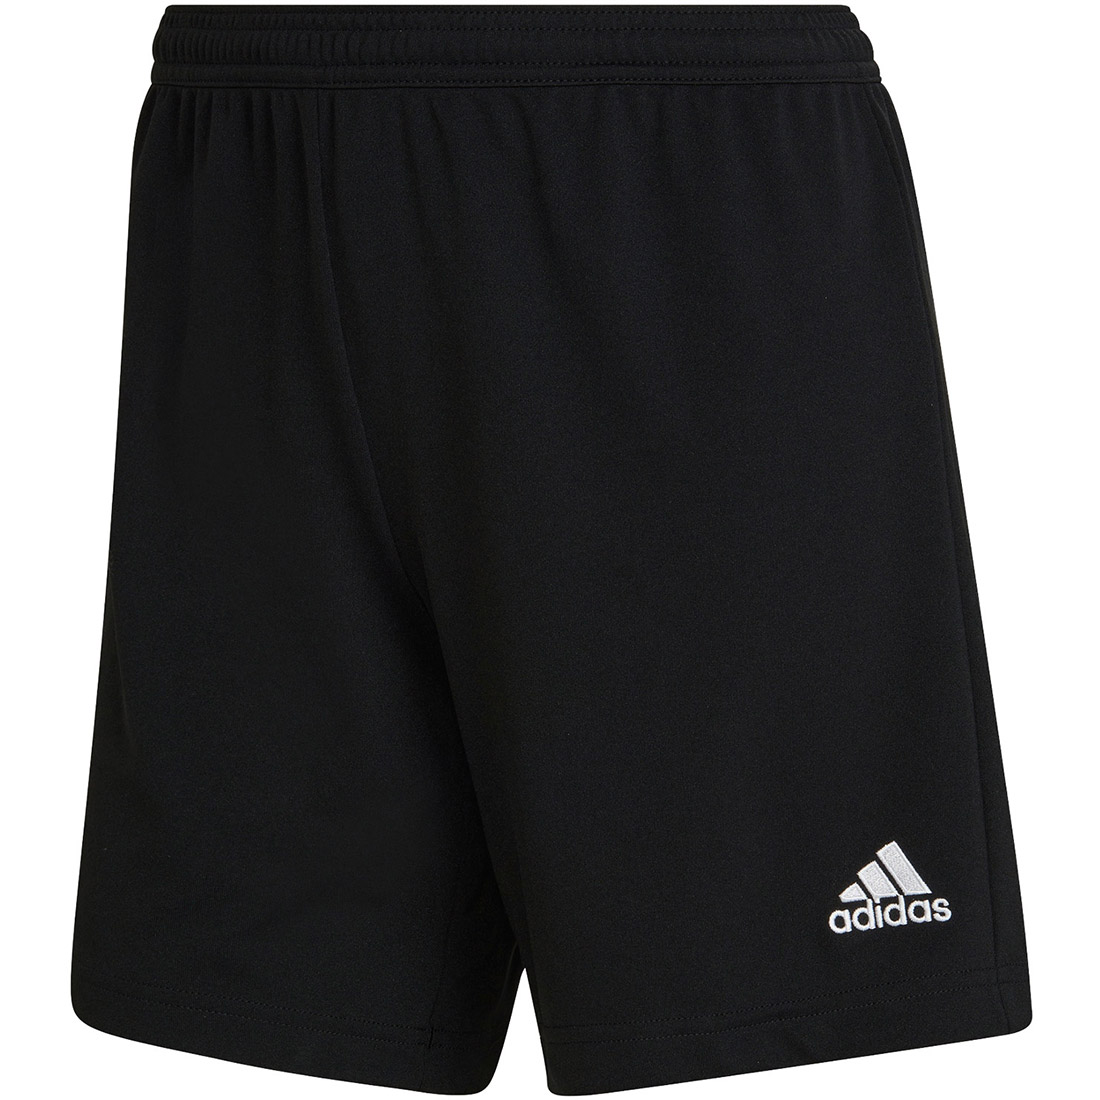 Adidas Damen Shorts Entrada 22 schwarz